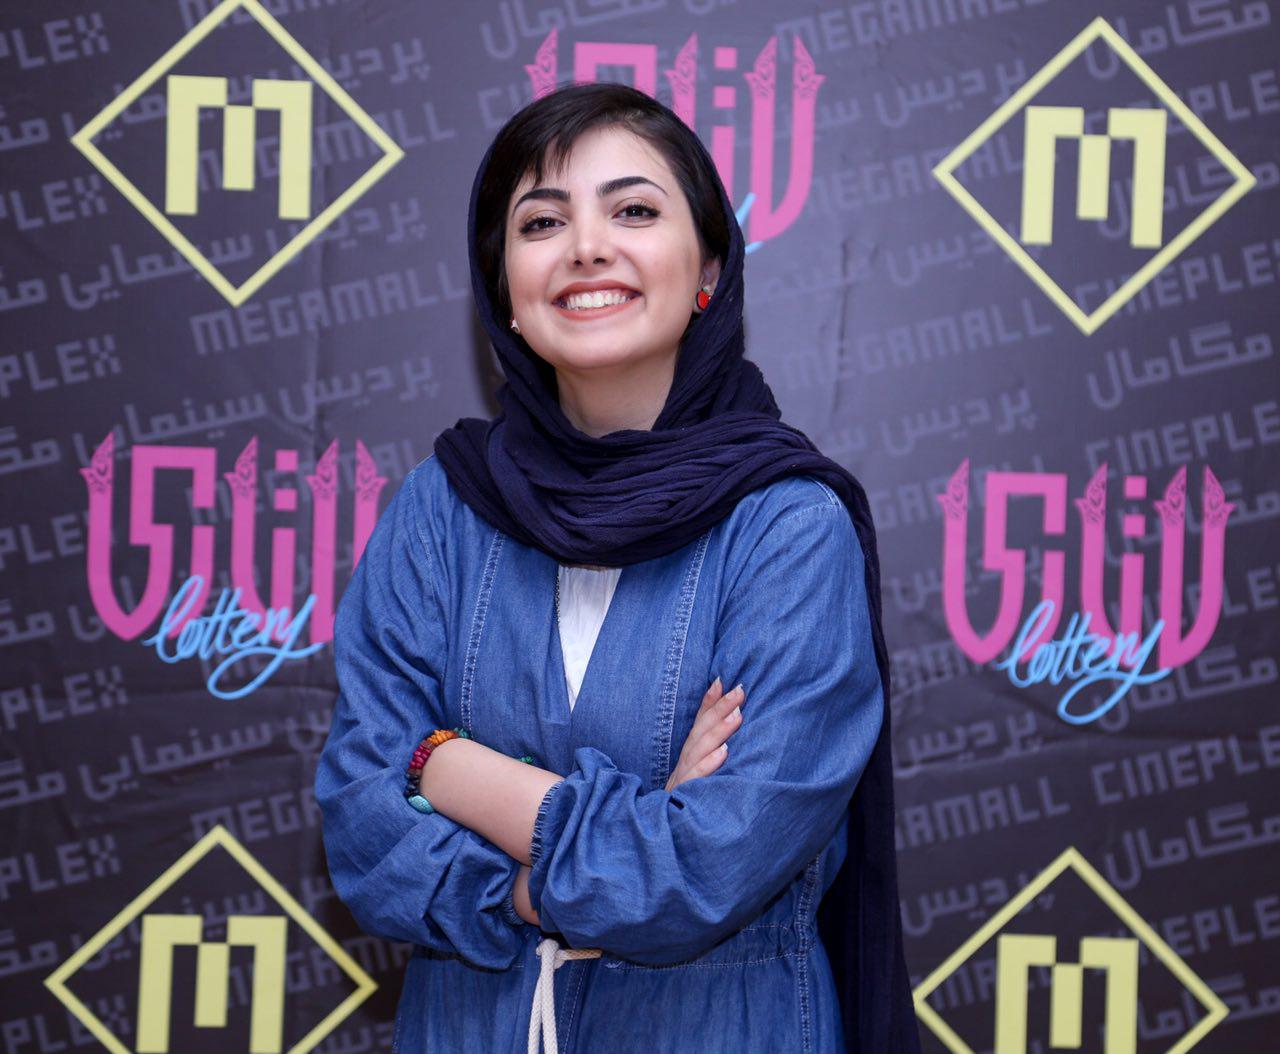 اکران افتتاحیه فیلم سینمایی لاتاری با حضور زیبا کرمعلی